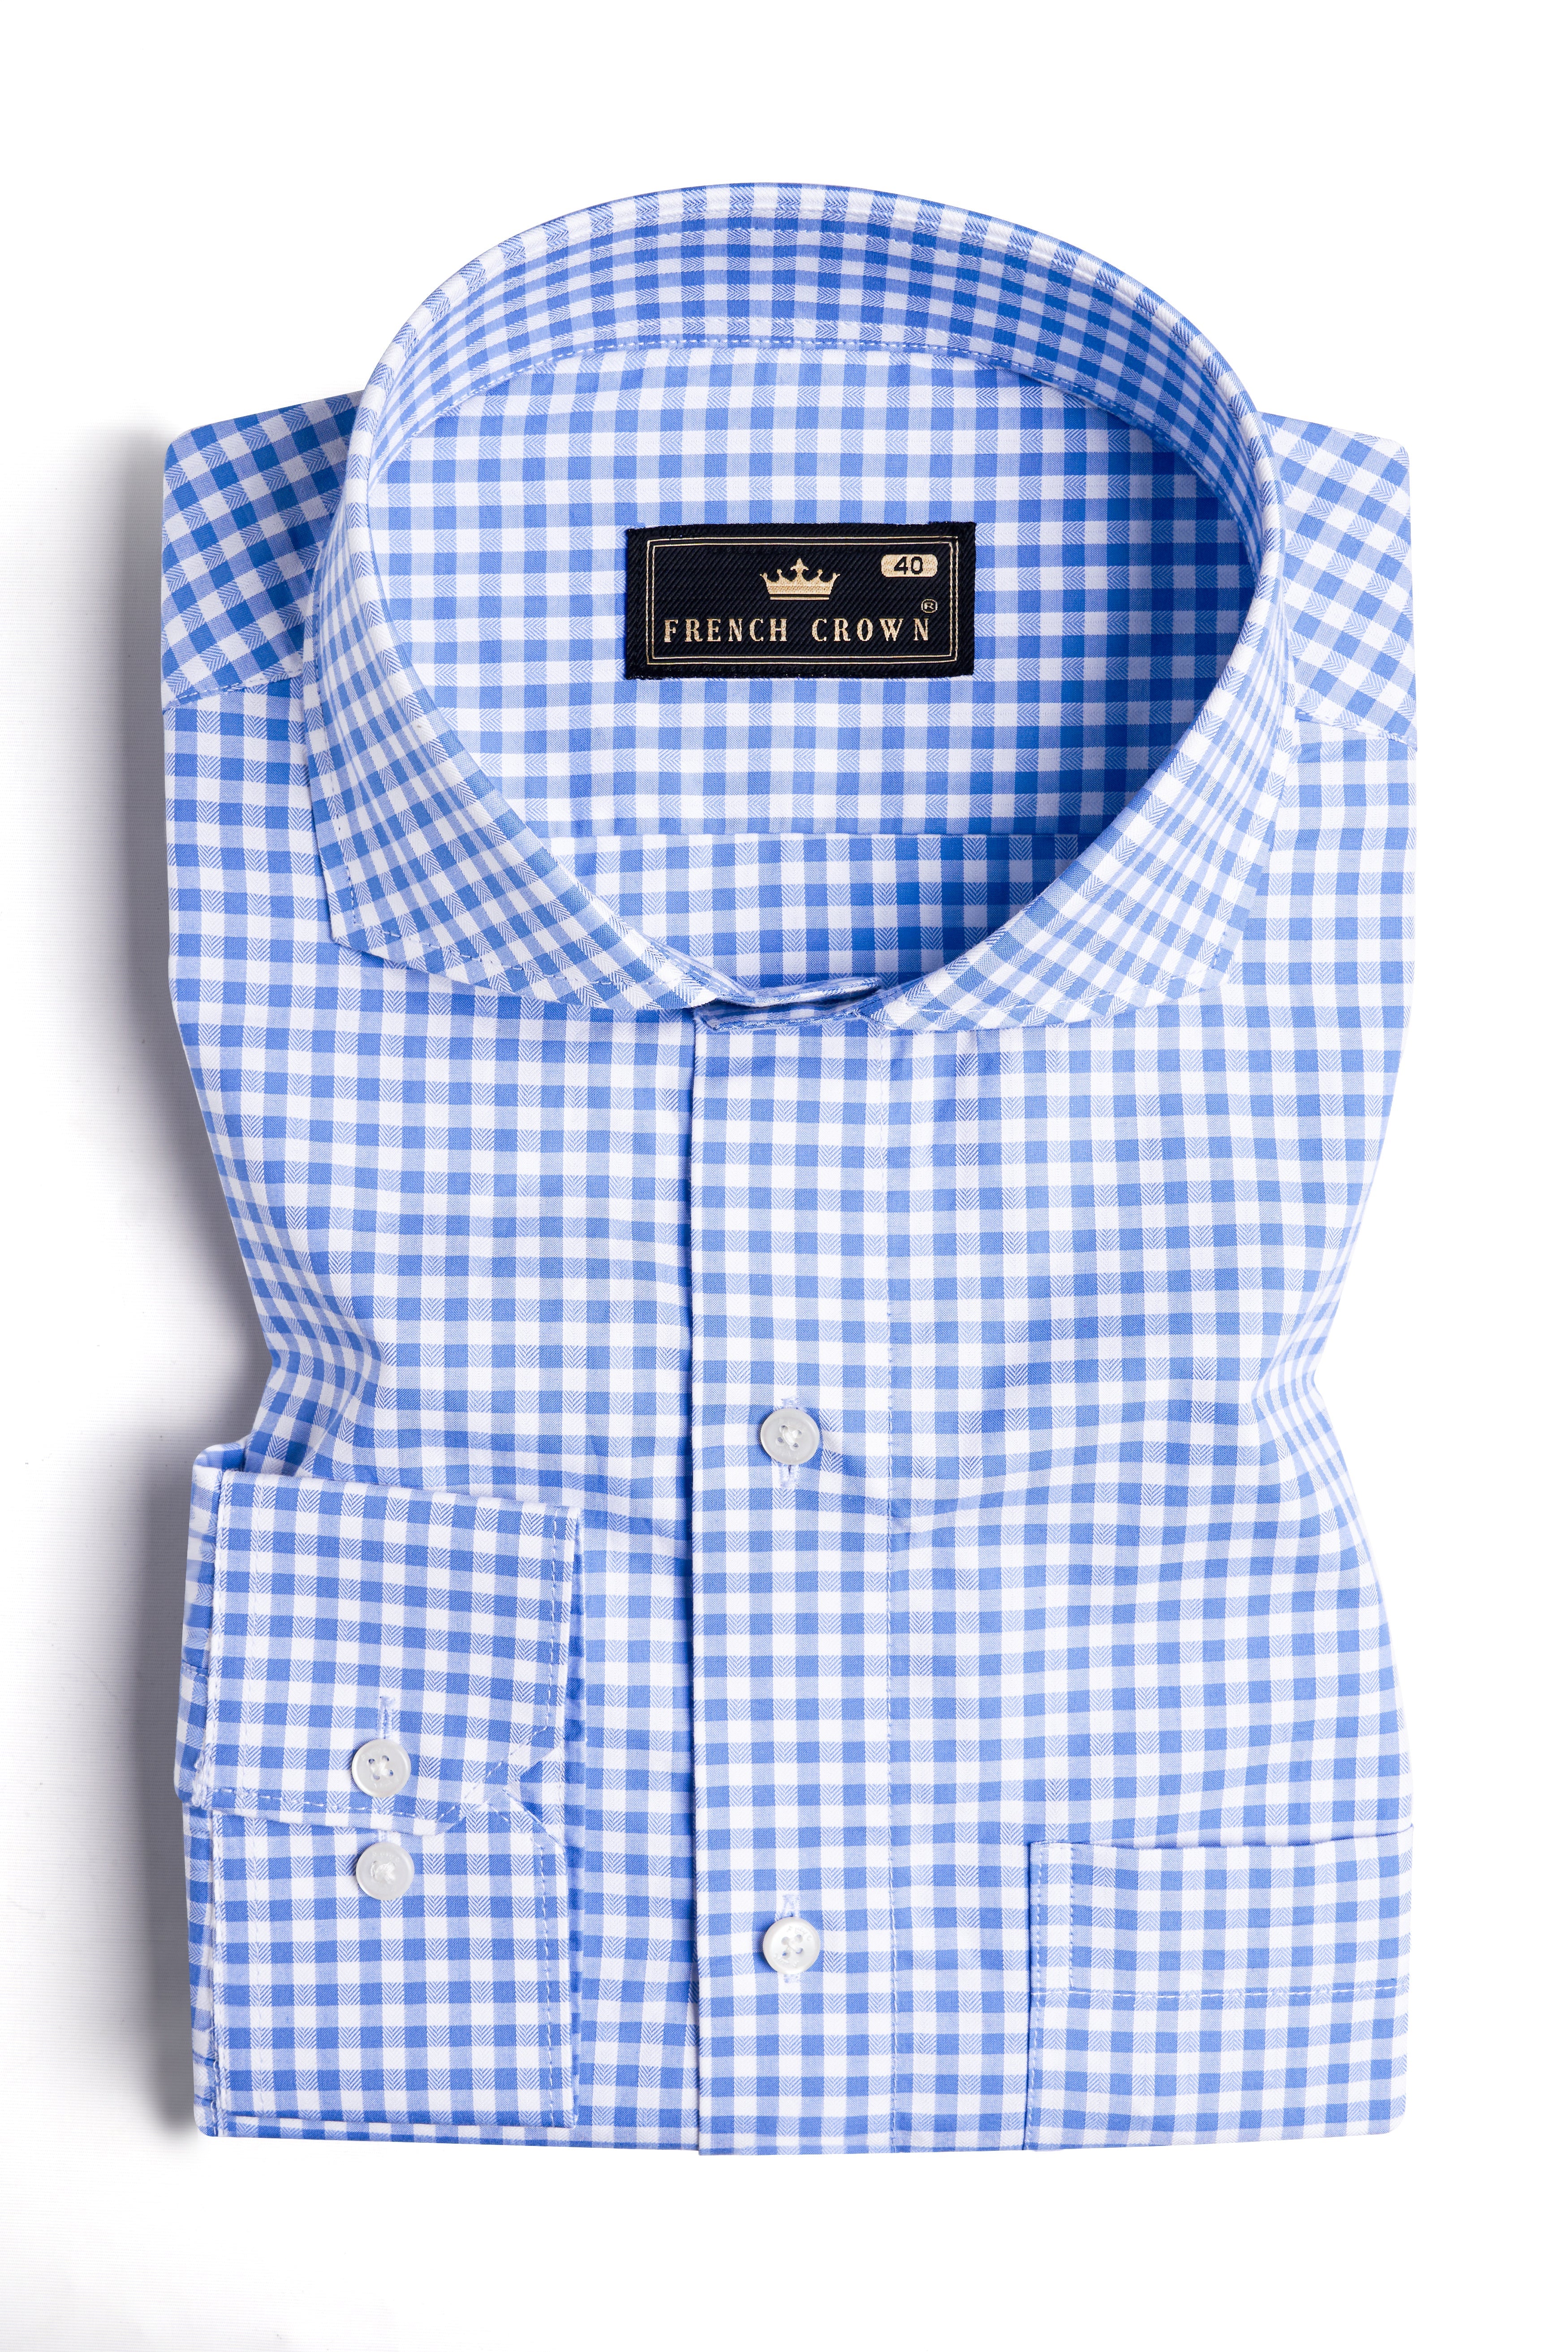 Carolina Blue and White Gingham Checkered Dobby Textured Premium Giza Cotton Shirt